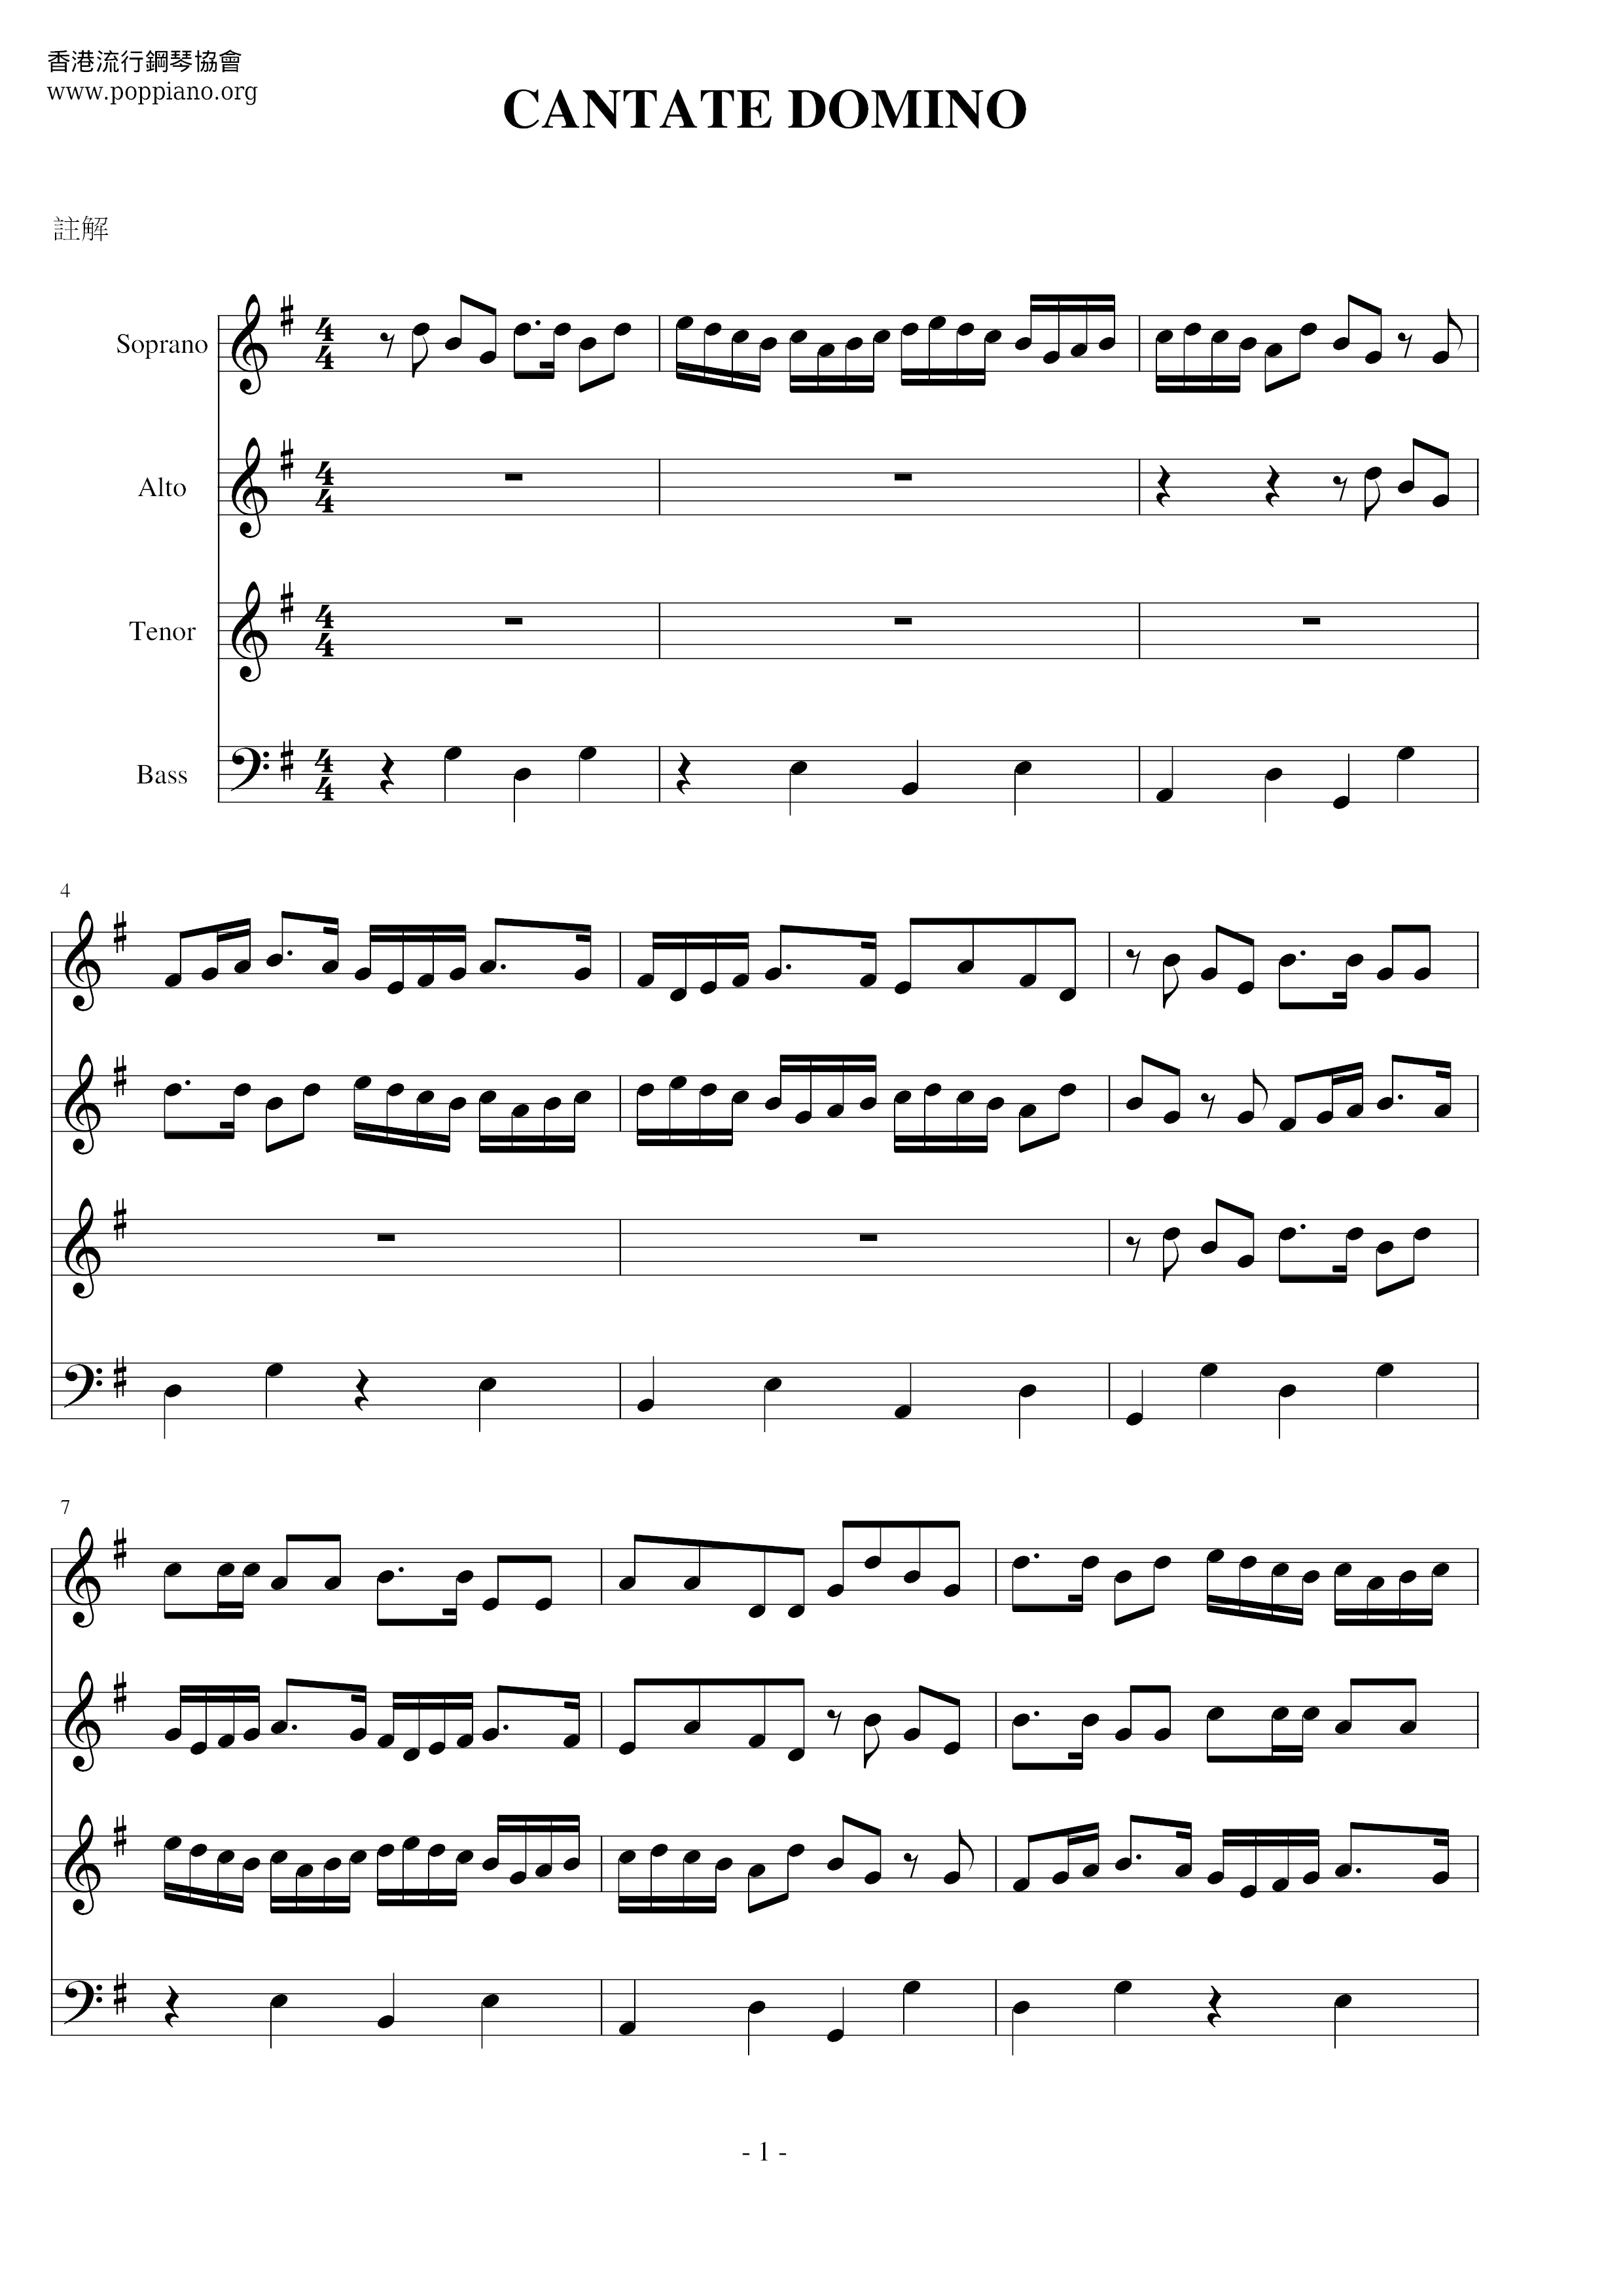 Cantate Domino Score